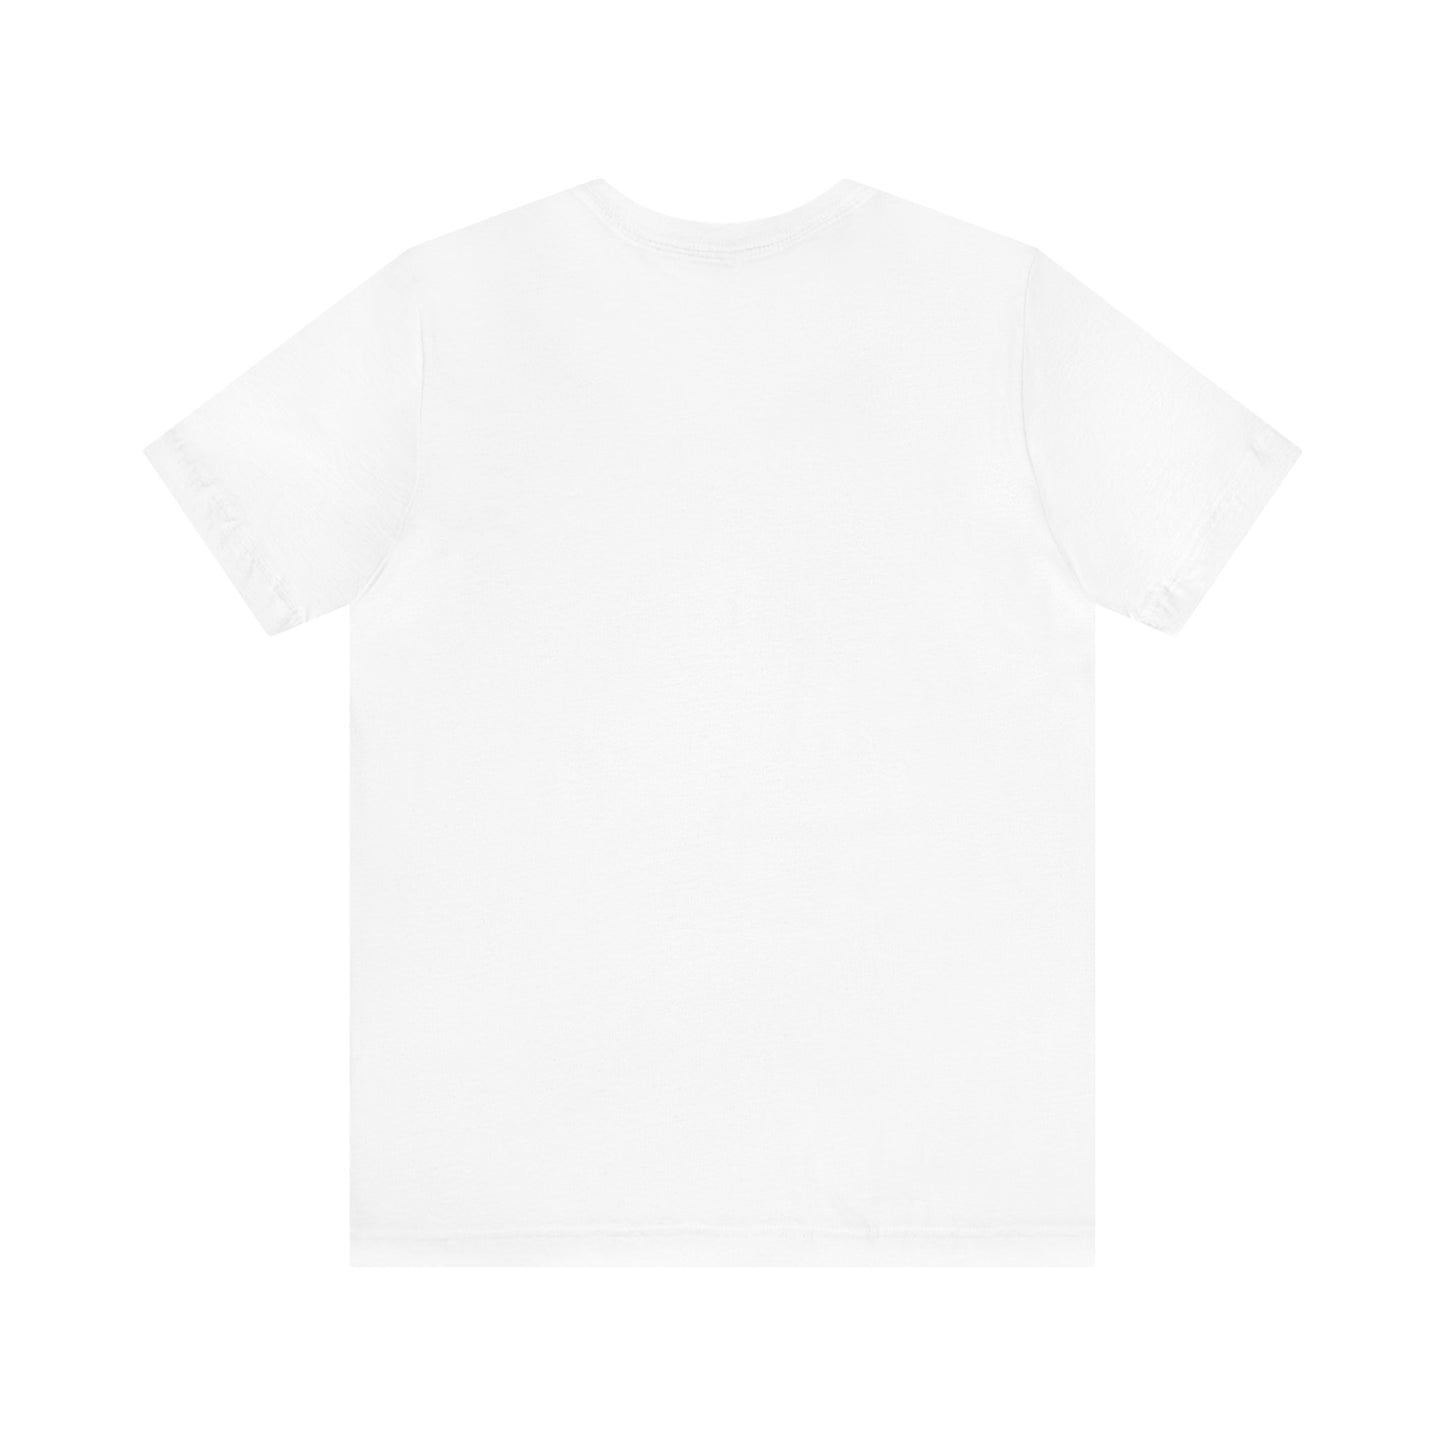 Jetfueldrip pinup T-shirt